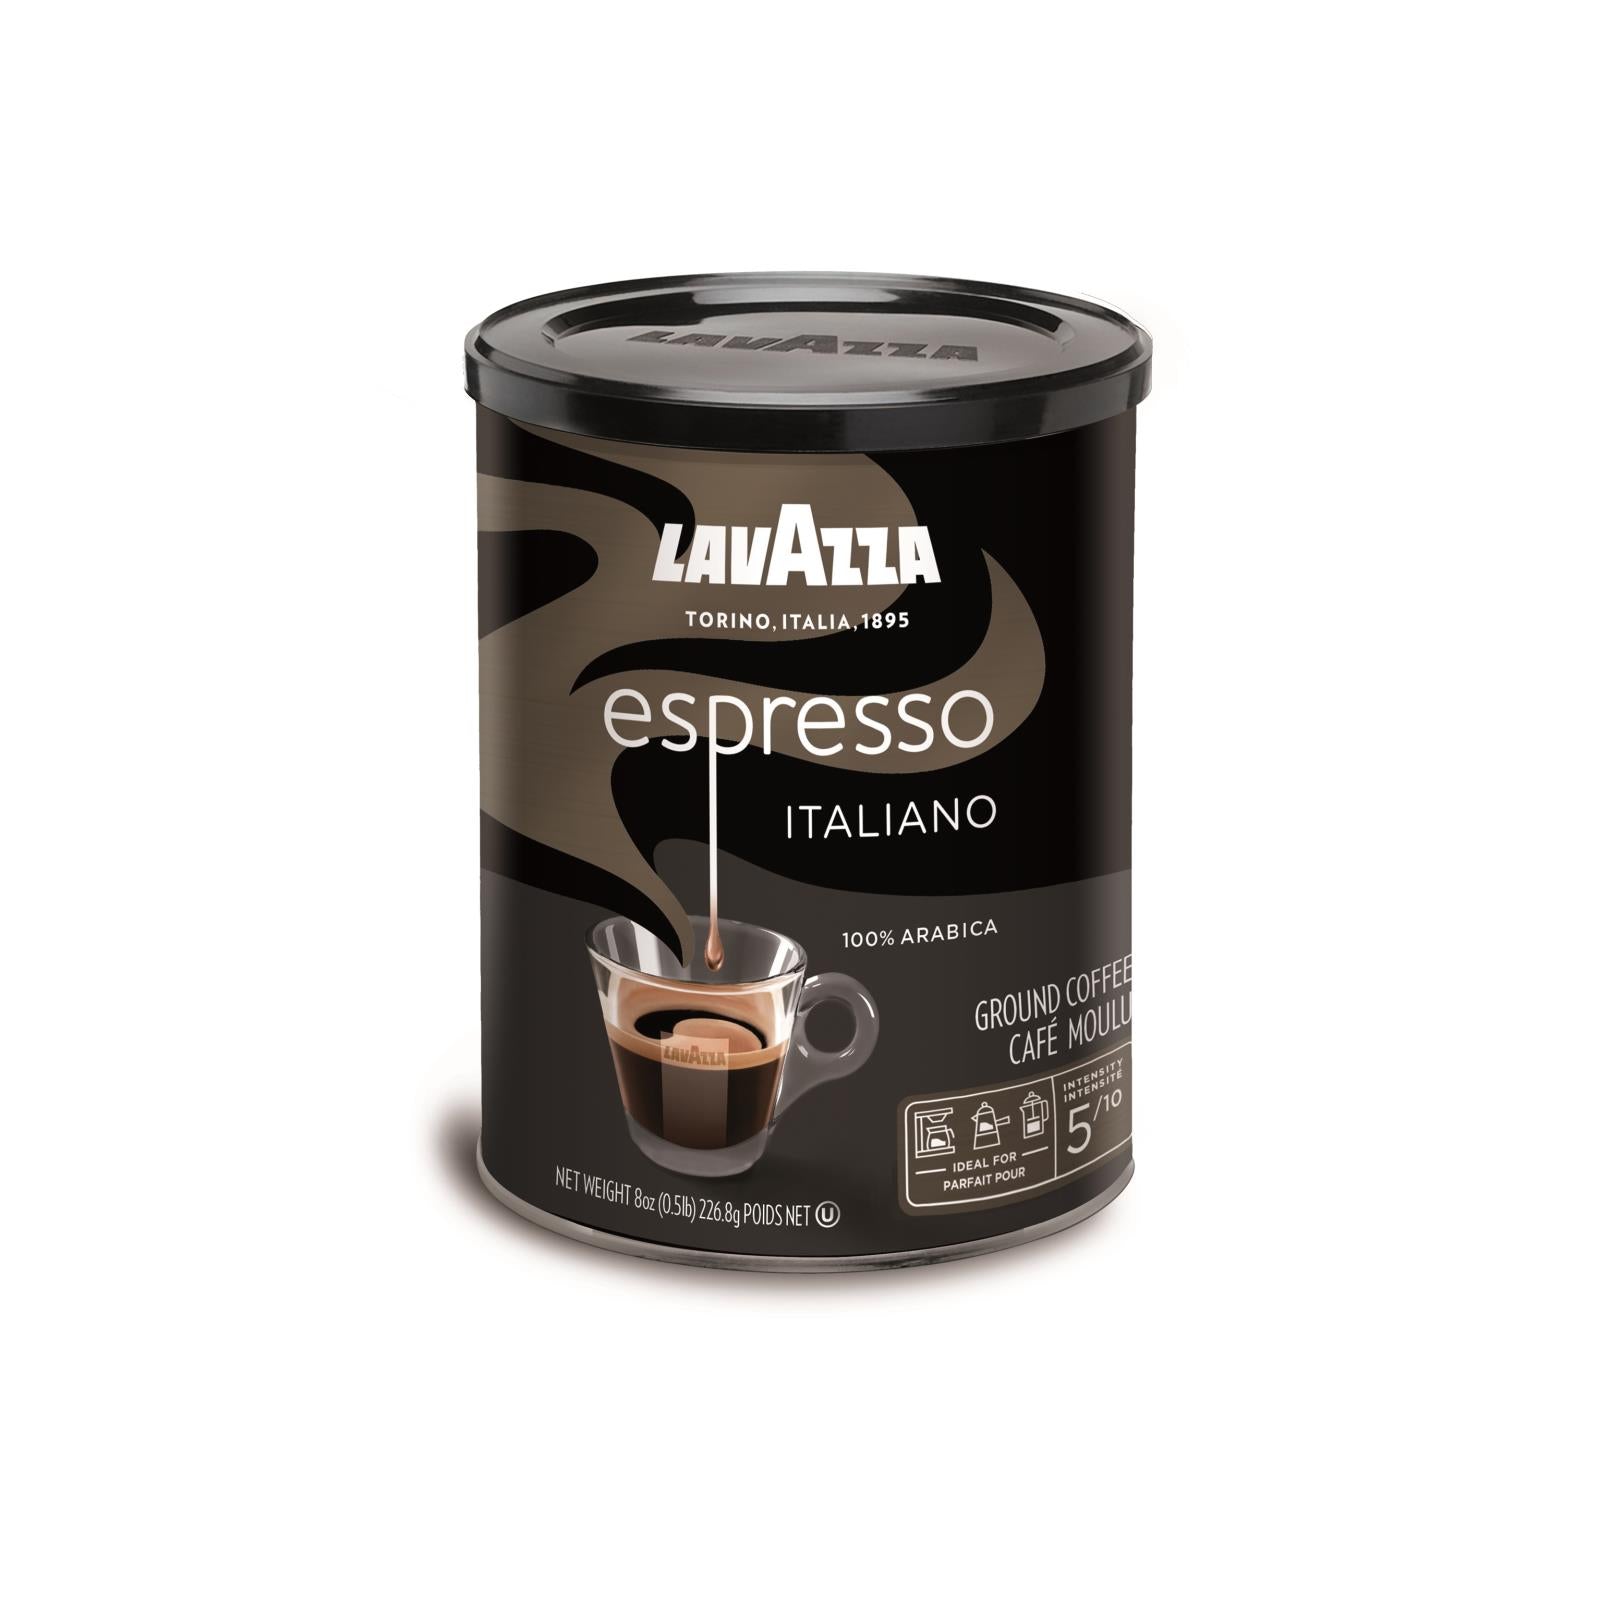 Lavazza Ground Coffee - Espresso Canned - Case Of 12 - 8 Oz